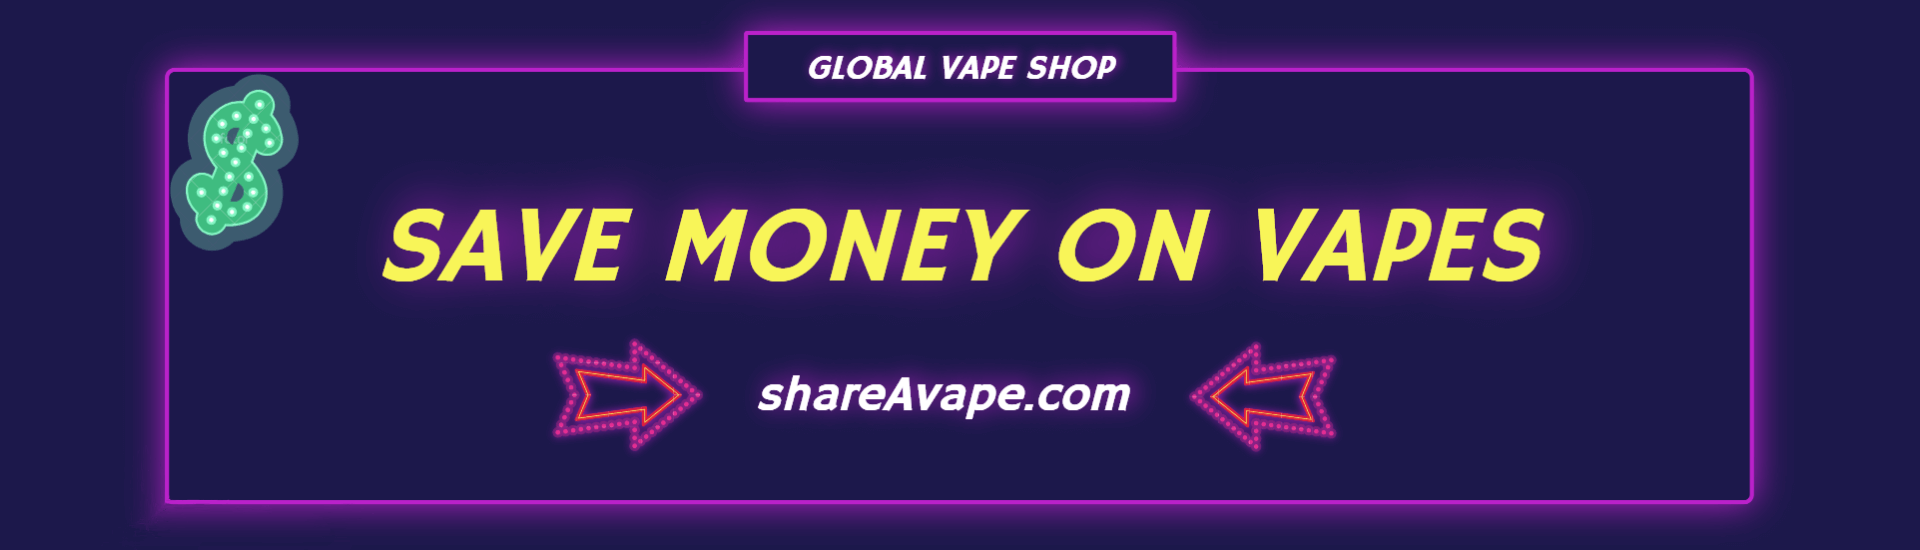 shareAvape coupon code and vape deals